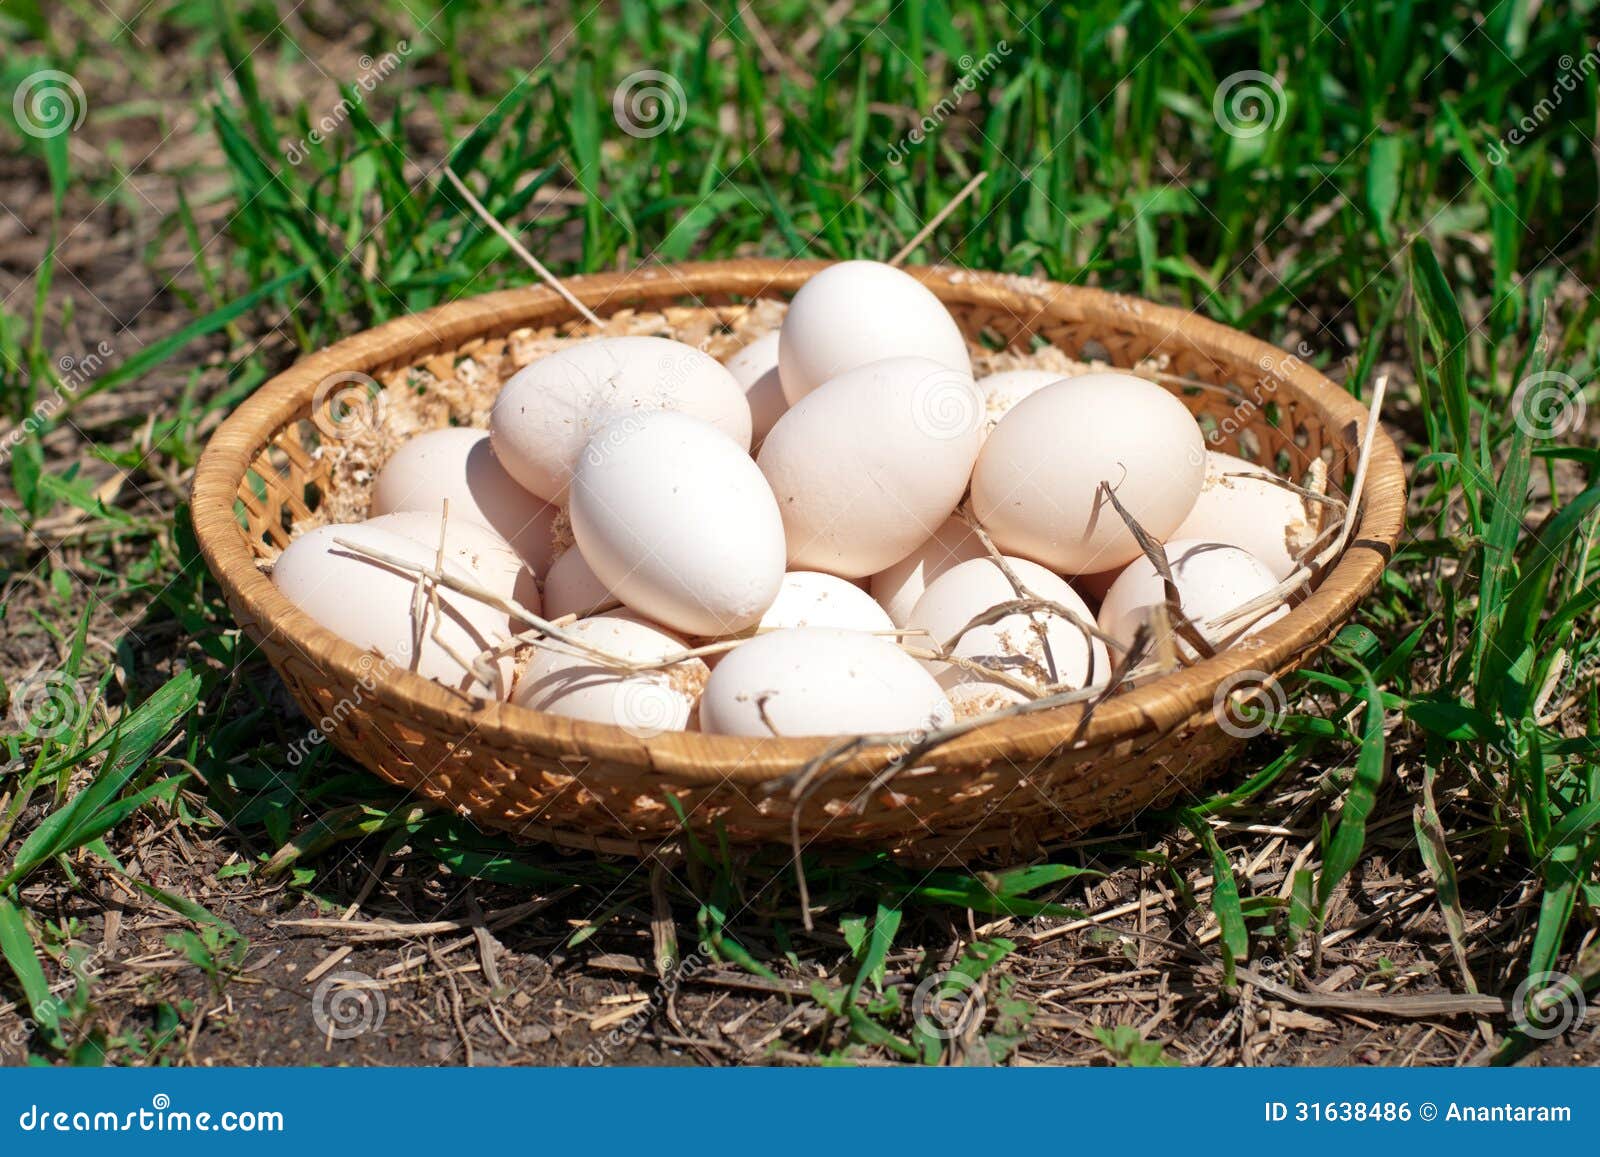 Fresh chicken eggs in a basket ...